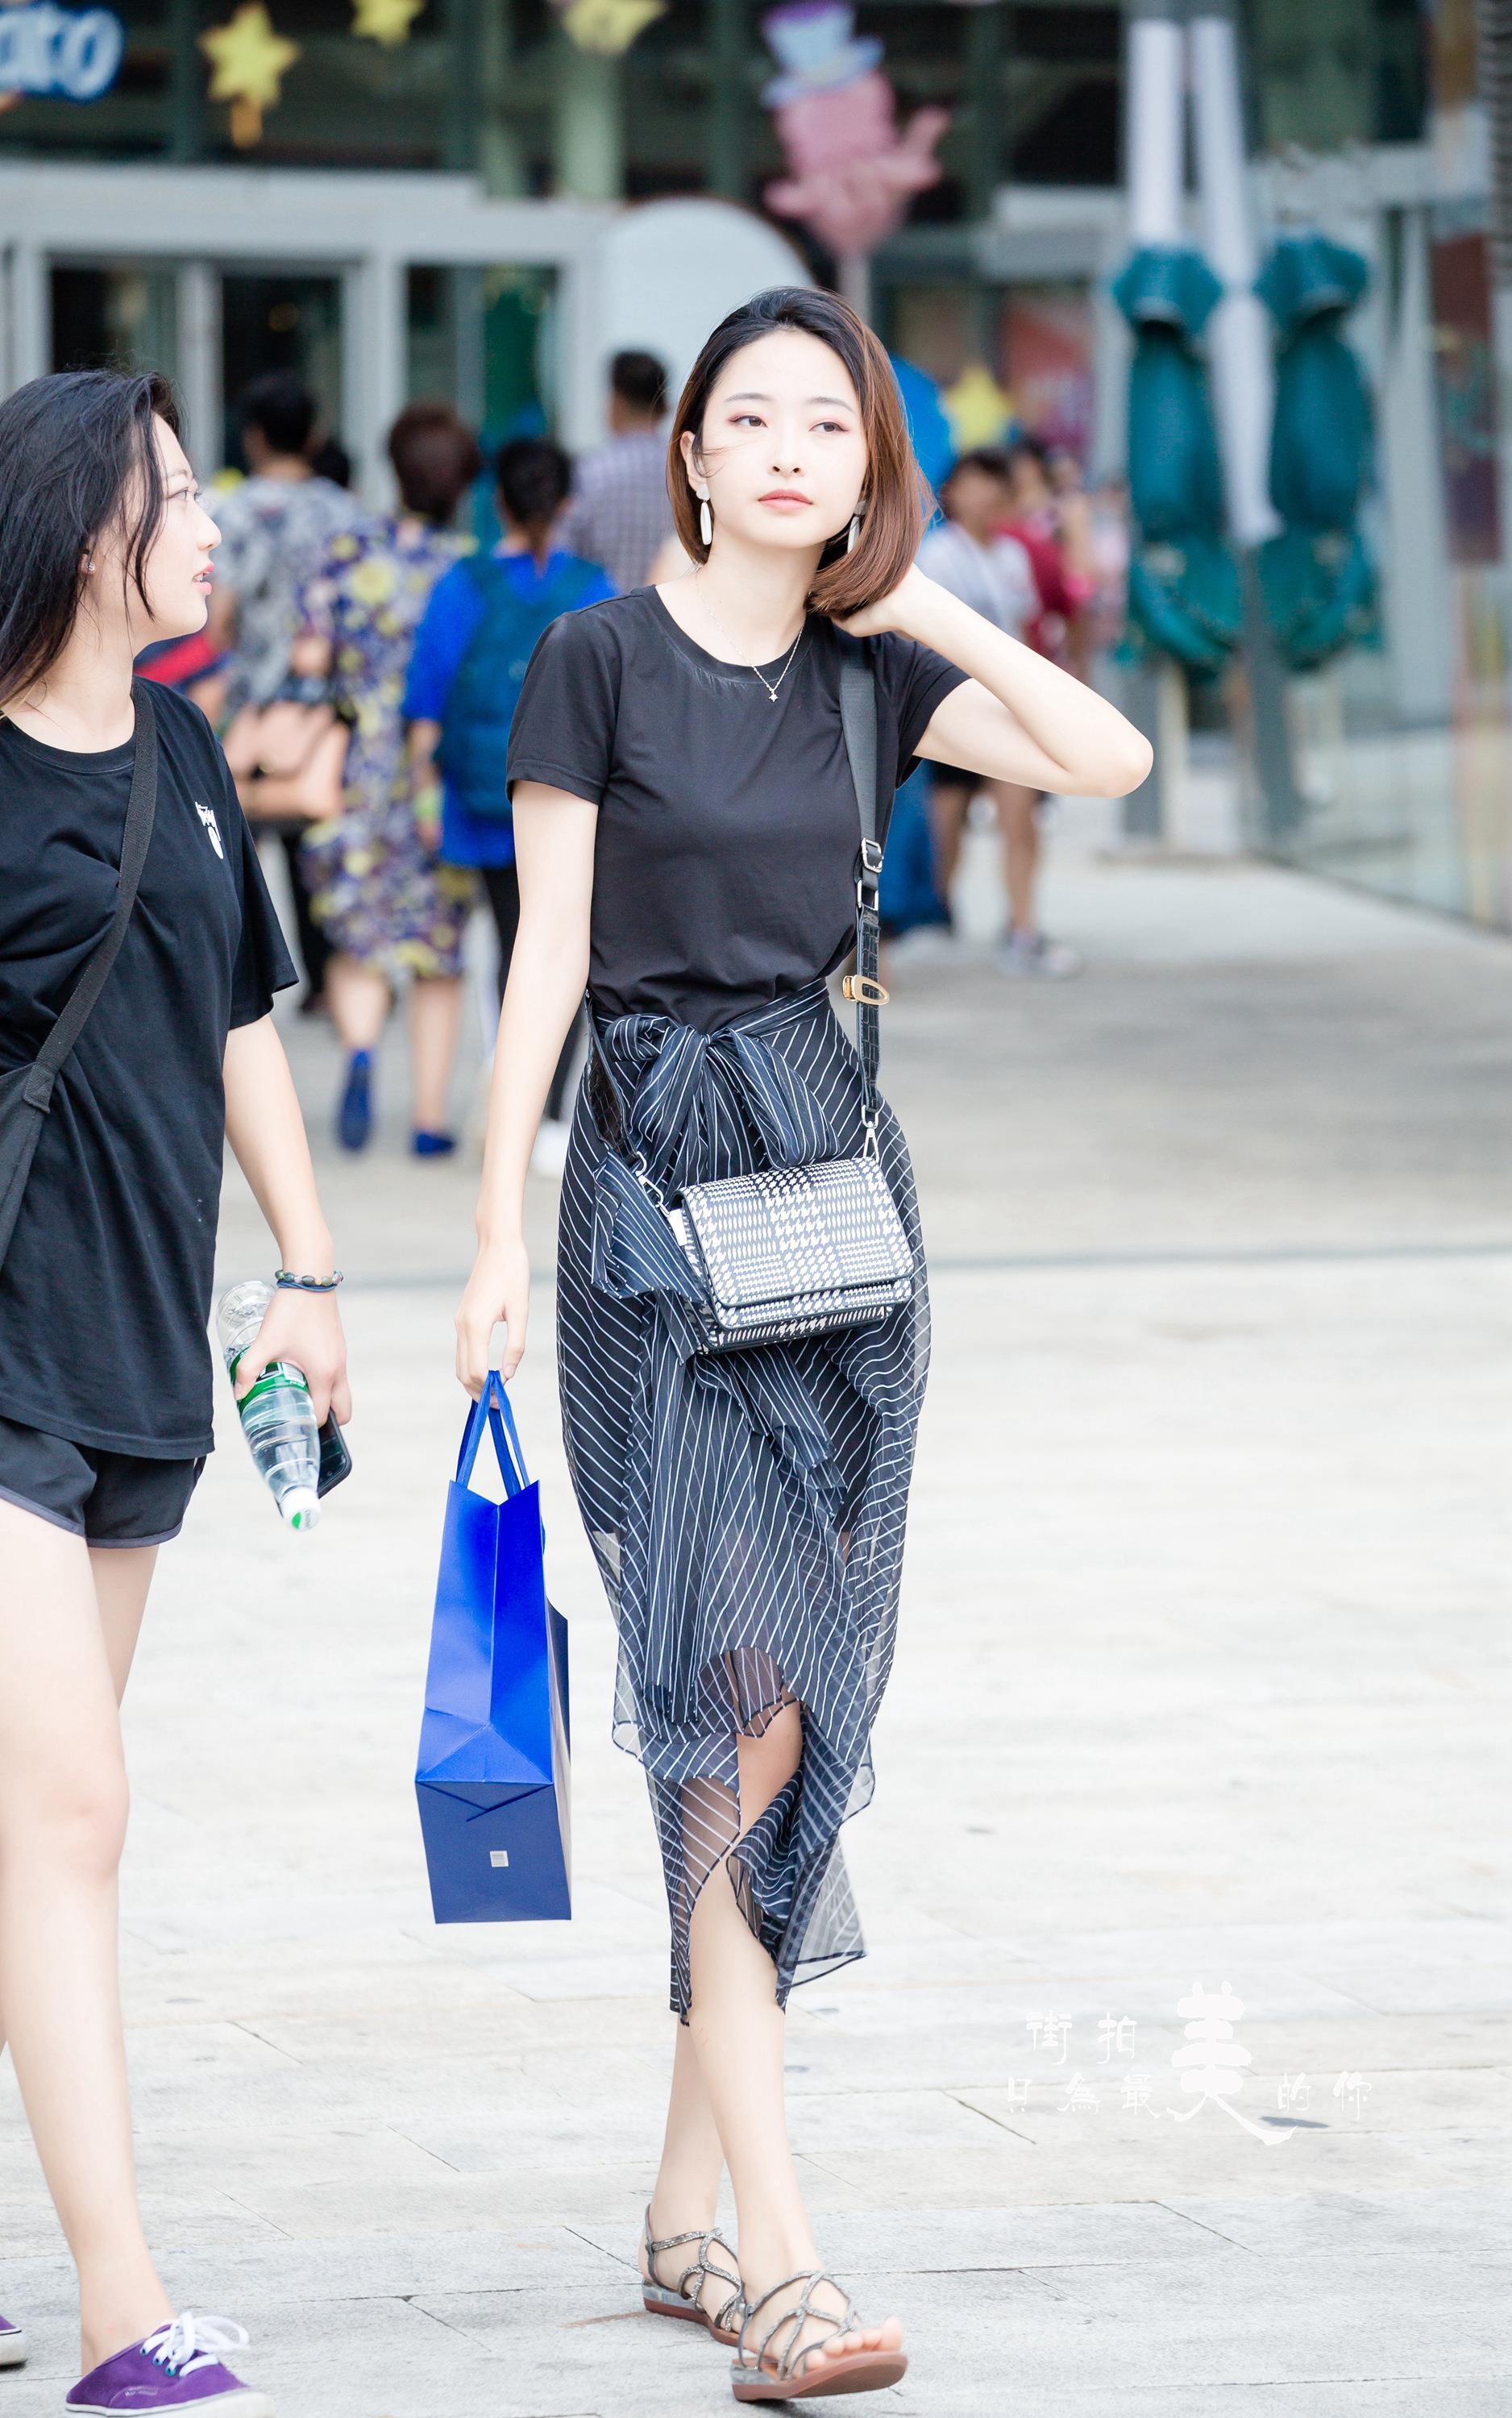 购物广场轻撩头发的气质美女 黑色短袖加黑色透视裙,